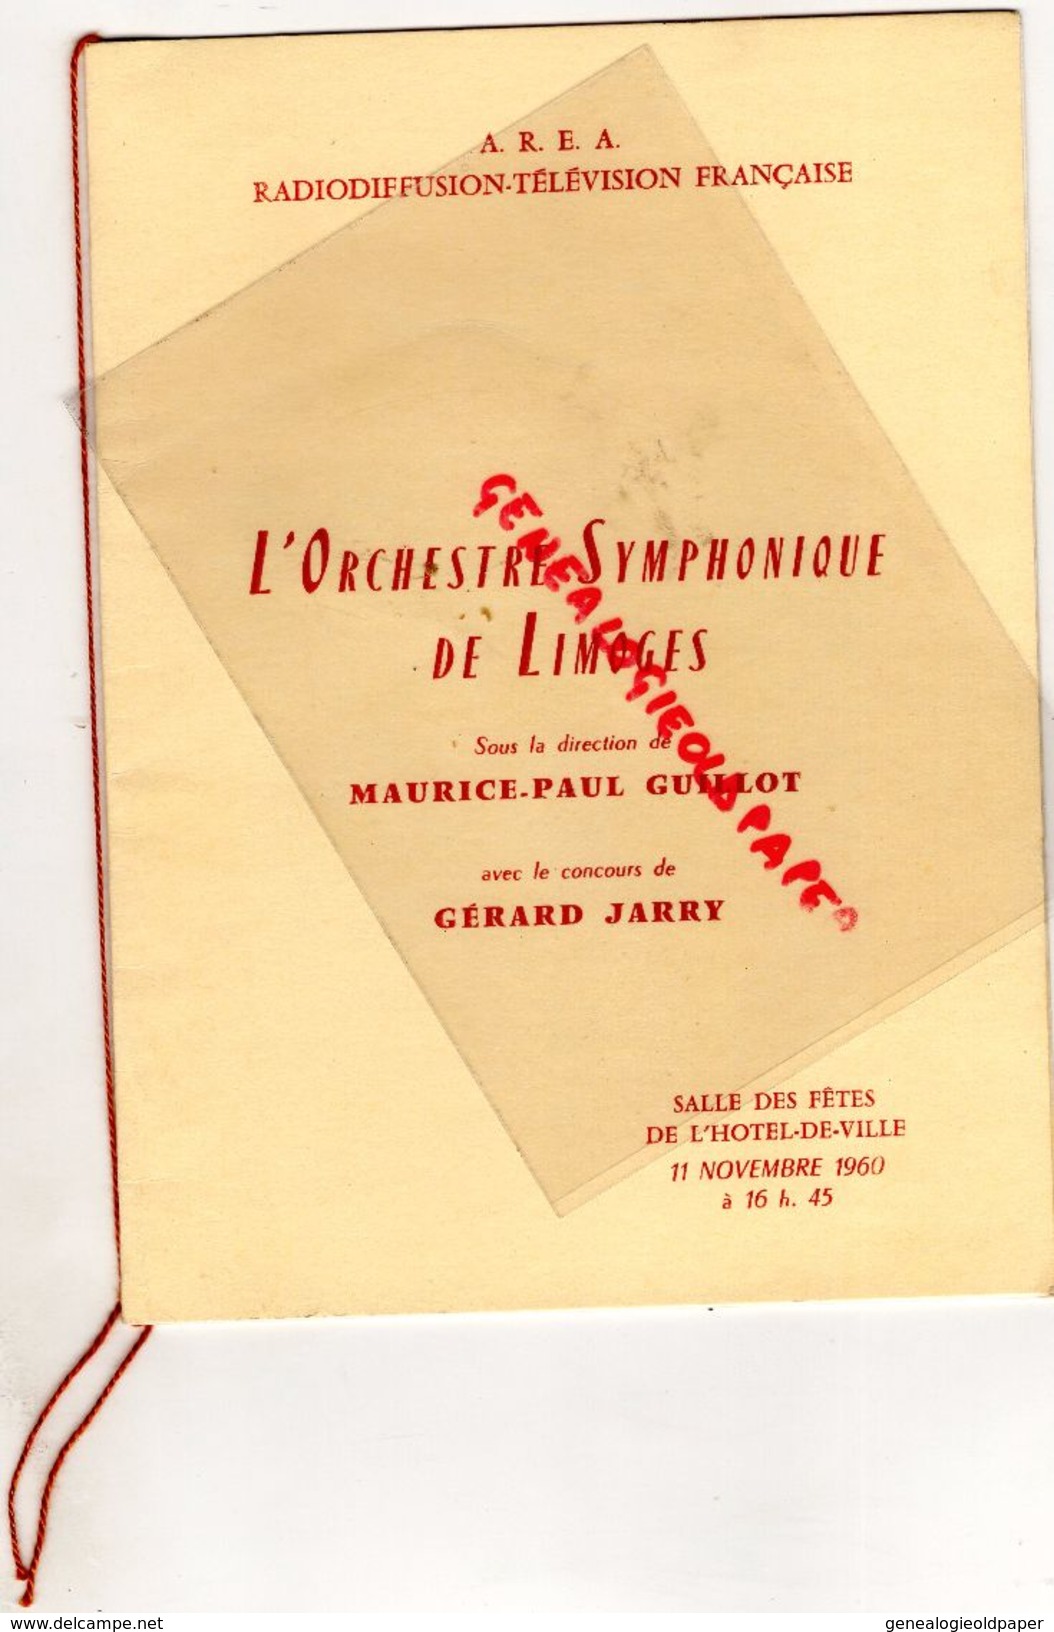 87 - LIMOGES- PROGRAMME ORCHESTRE SYMPHONIQUE -MAURICE PAUL GUILLOT- GERARD JARRY-HOTEL DE VILLE -11-11-1960-HAENDEL- - Programs